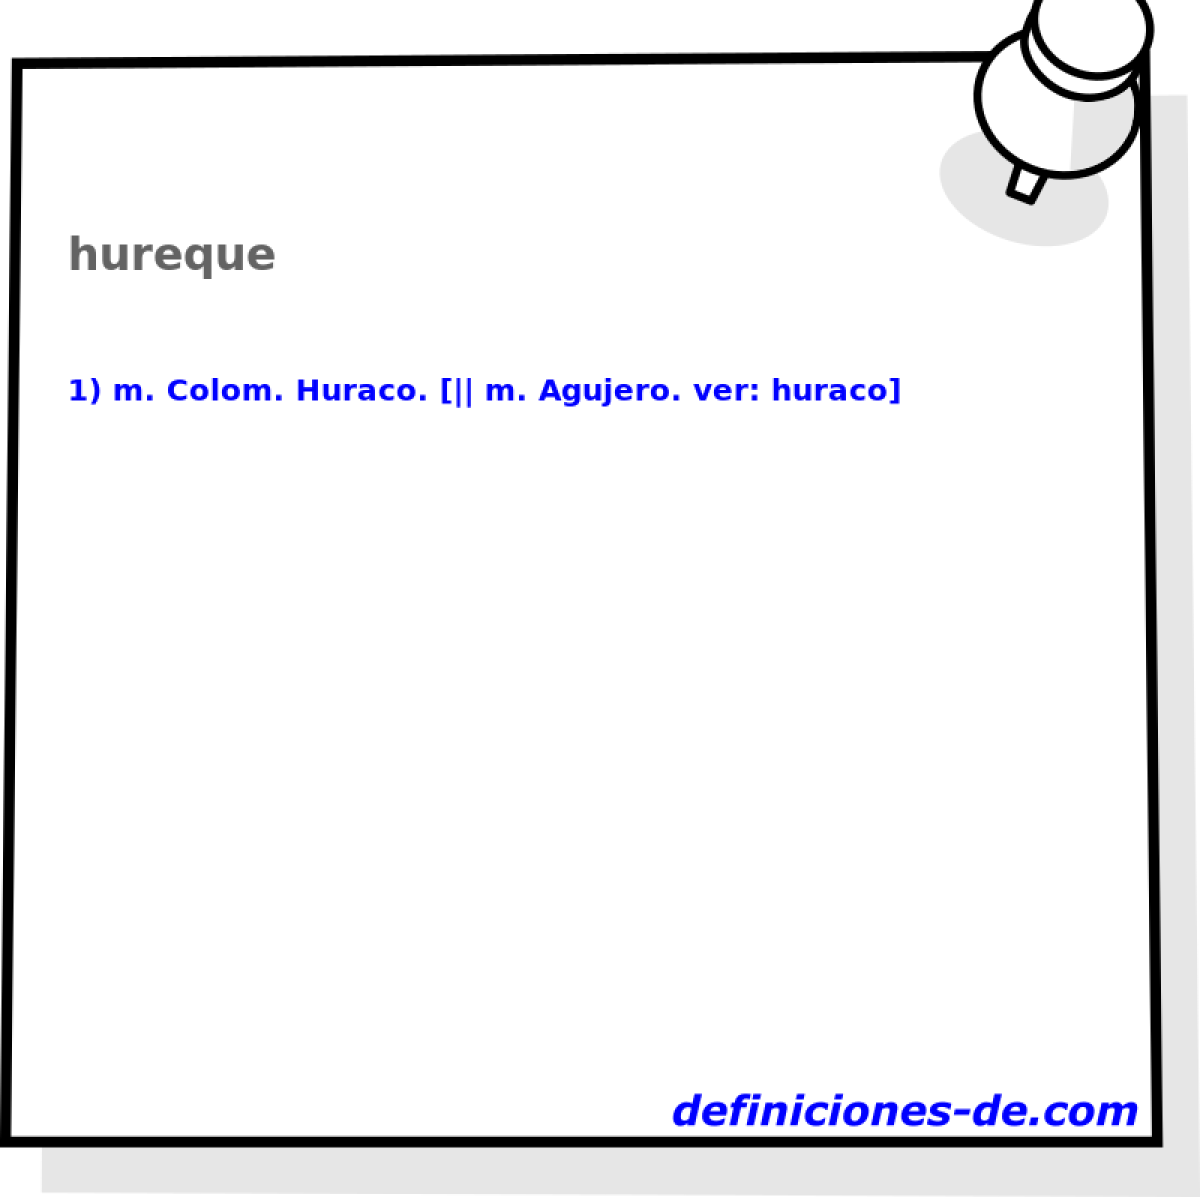 hureque 